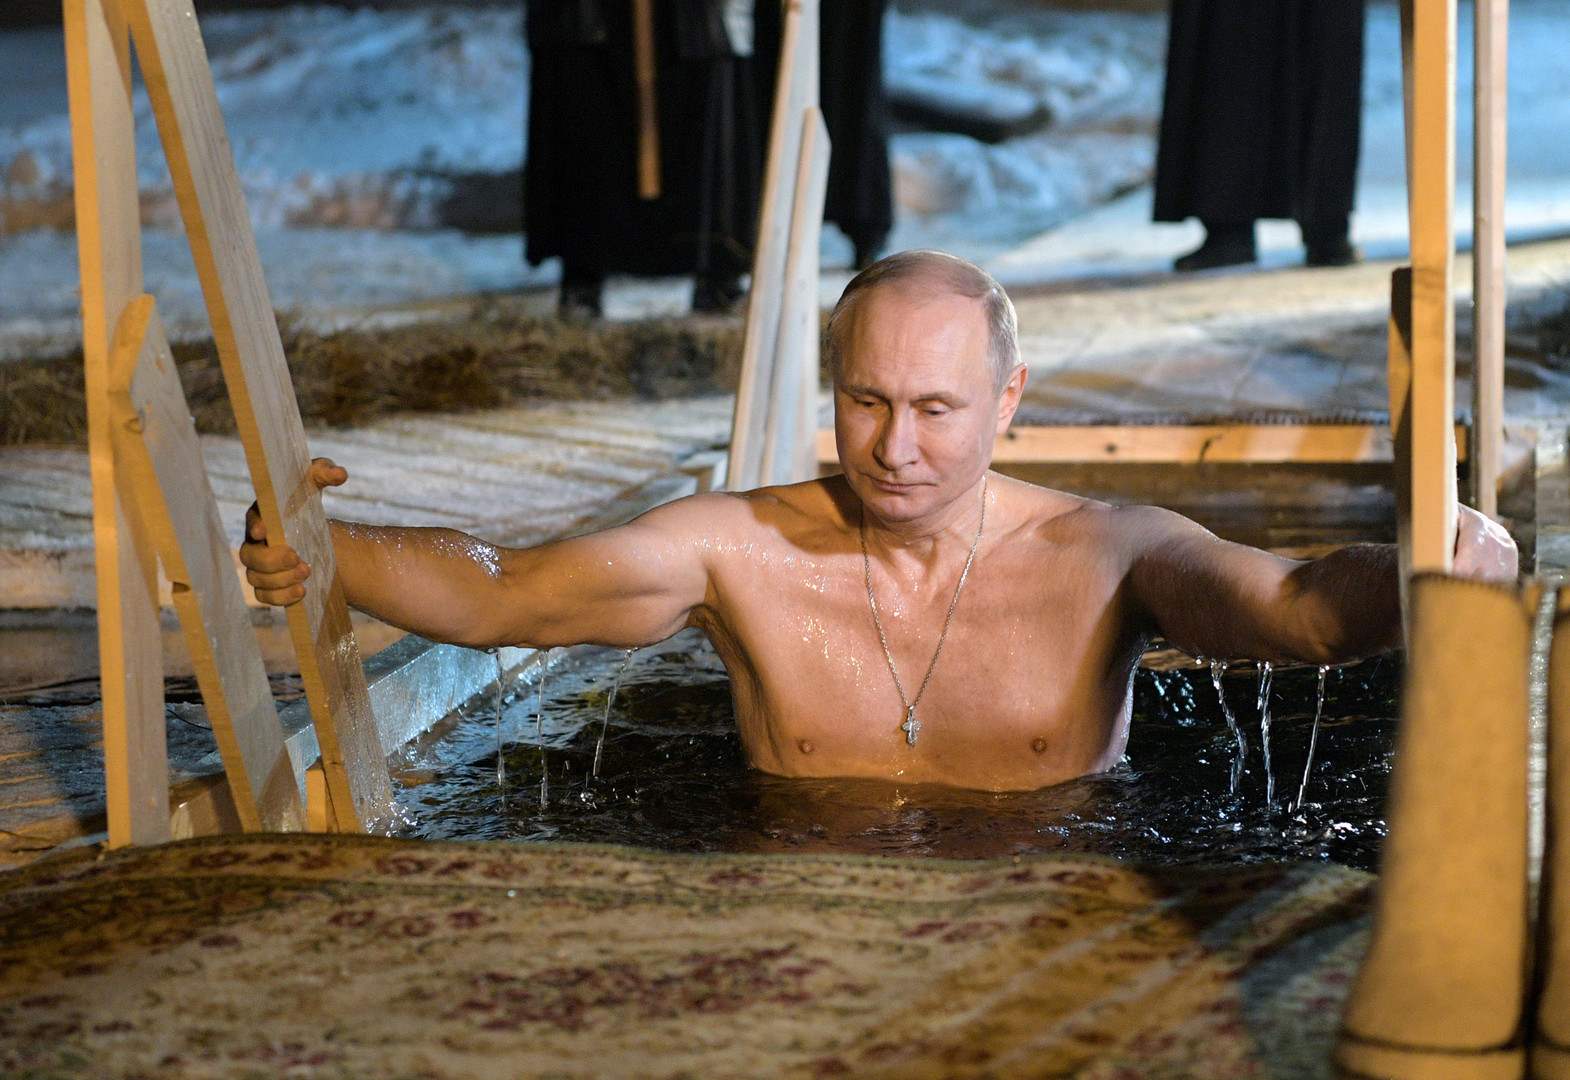 Vladimir Poutine s'immerge dans l'eau glacée pour commémorer le baptême du Christ (PHOTOS, VIDEO)